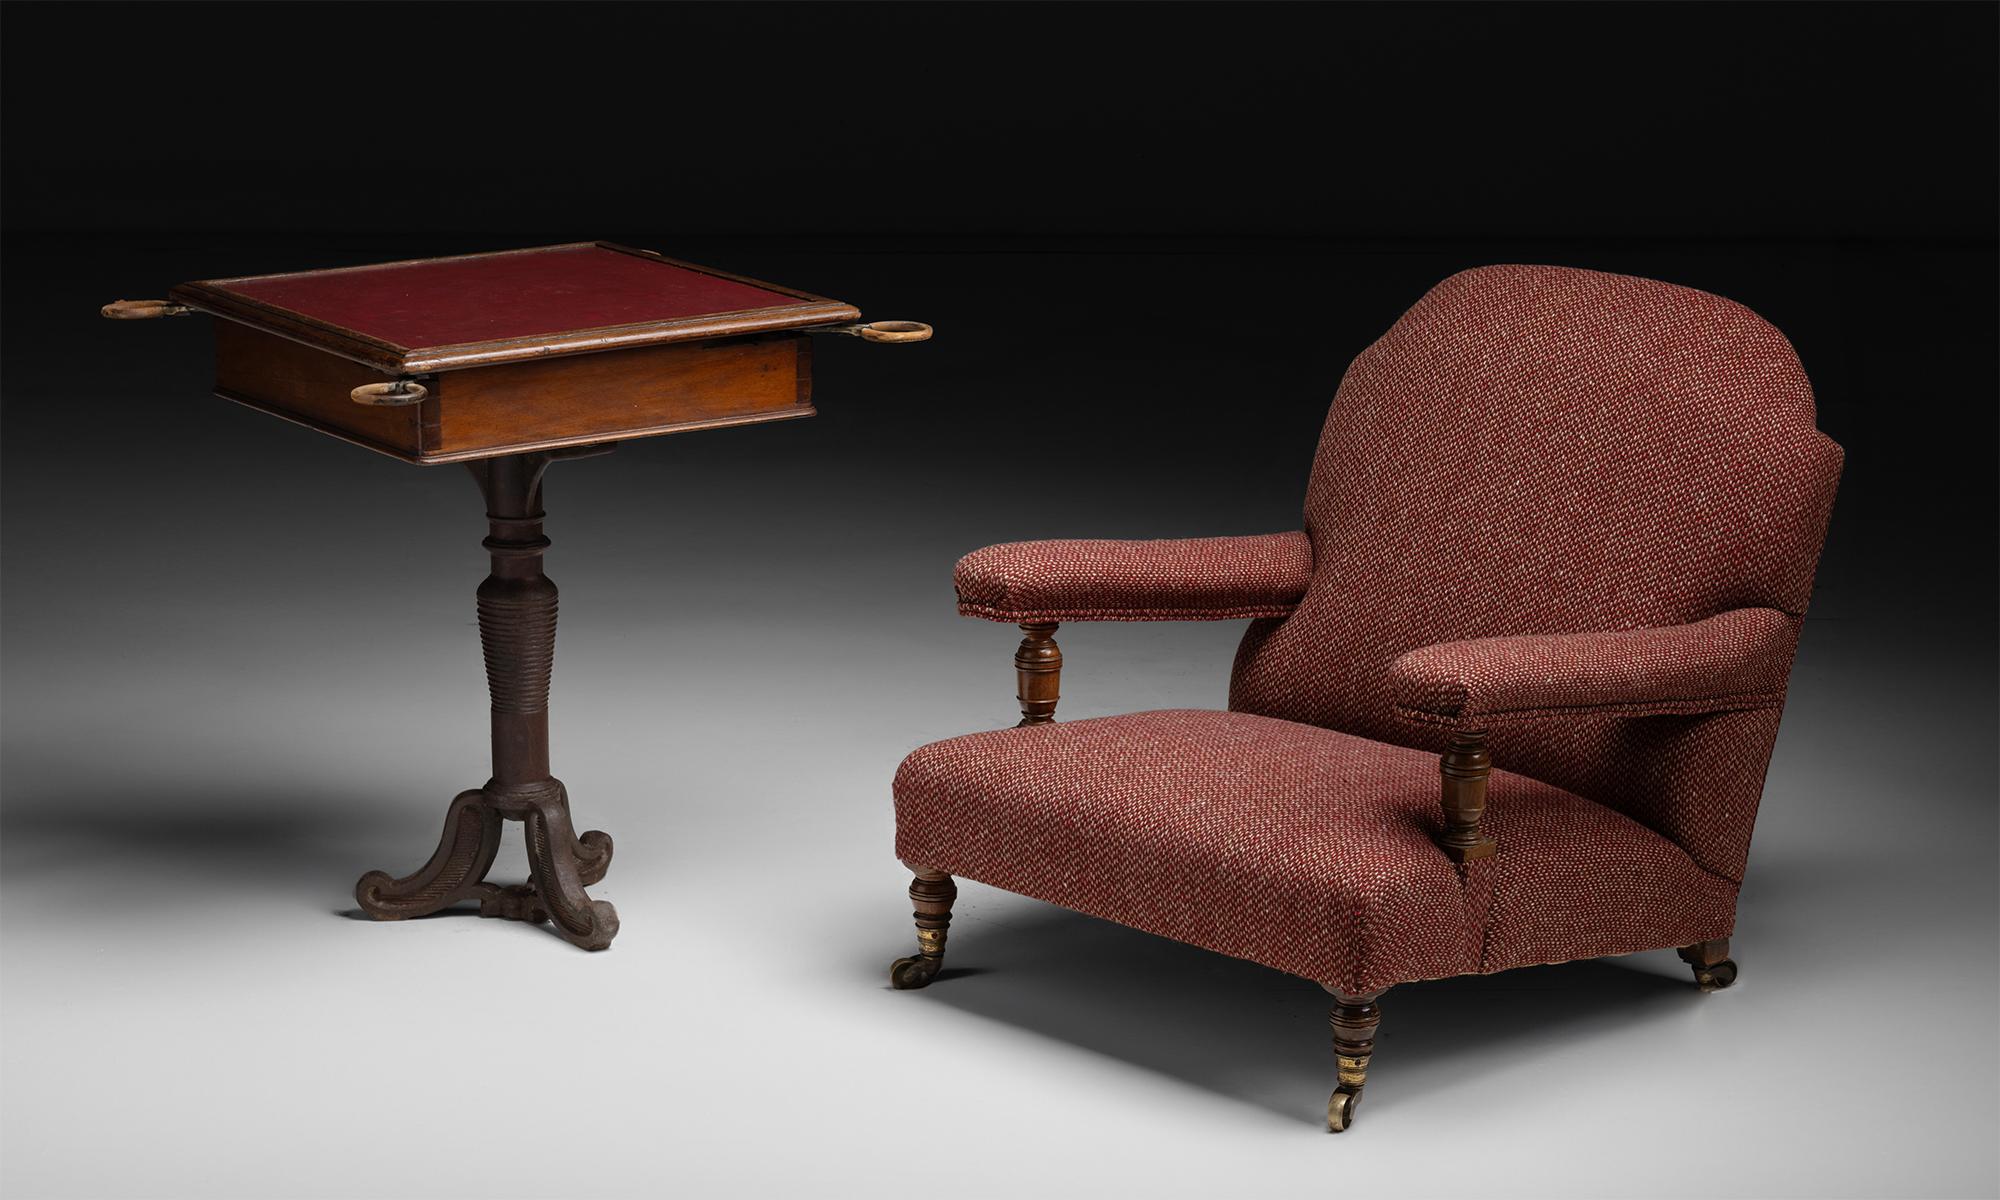 Wool Howard & Sons Armchair in Pierre Frey Tweed, England circa 1880